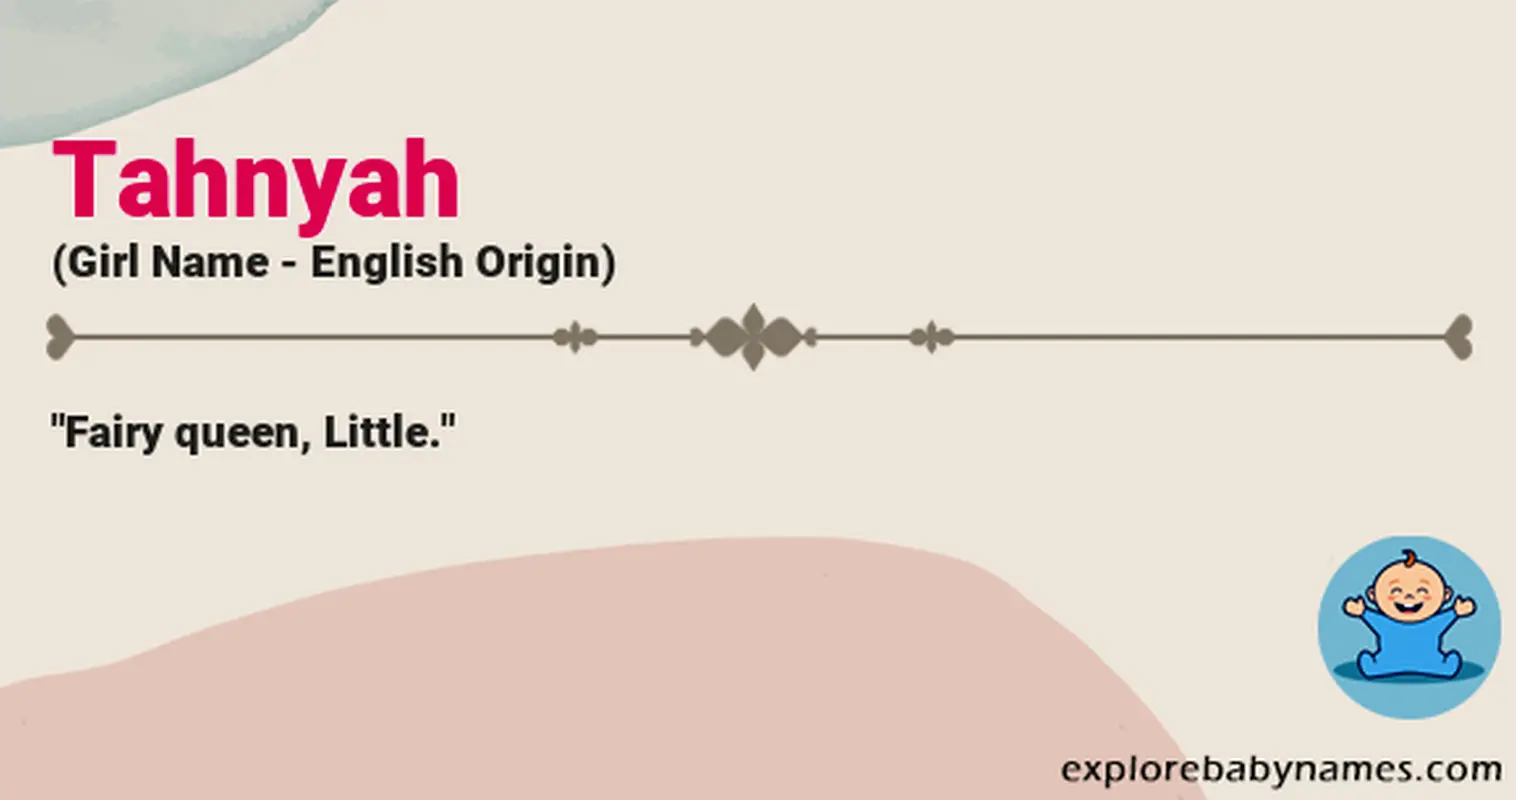 Meaning of Tahnyah